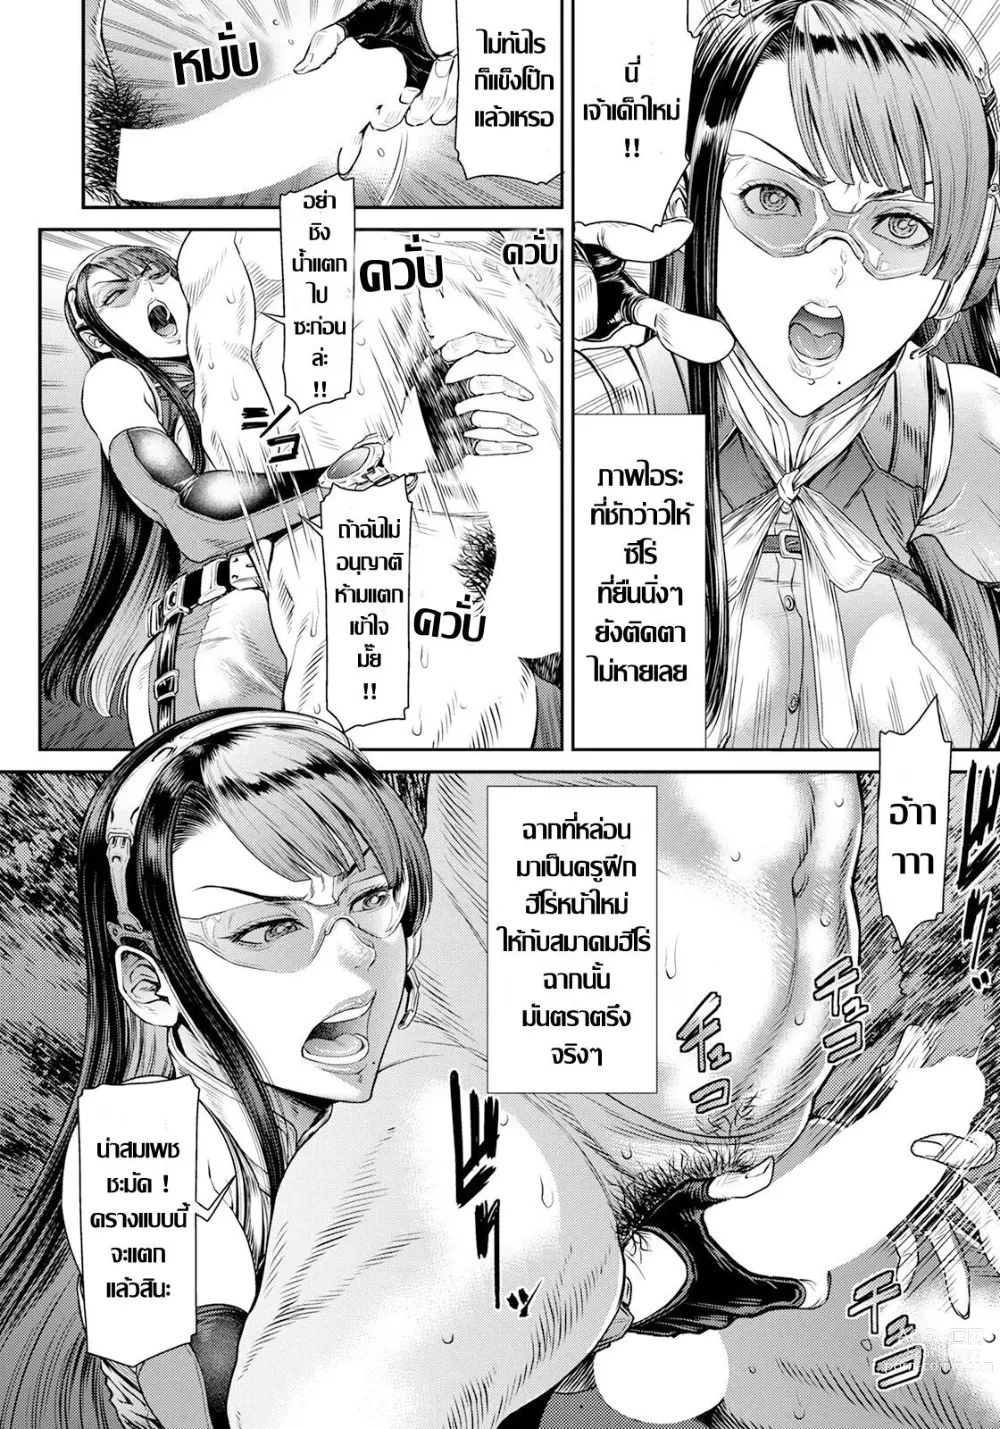 Page 4 of doujinshi 非道..堕方大最強七口インขอเป็นตัวร้ายในกายเธอ